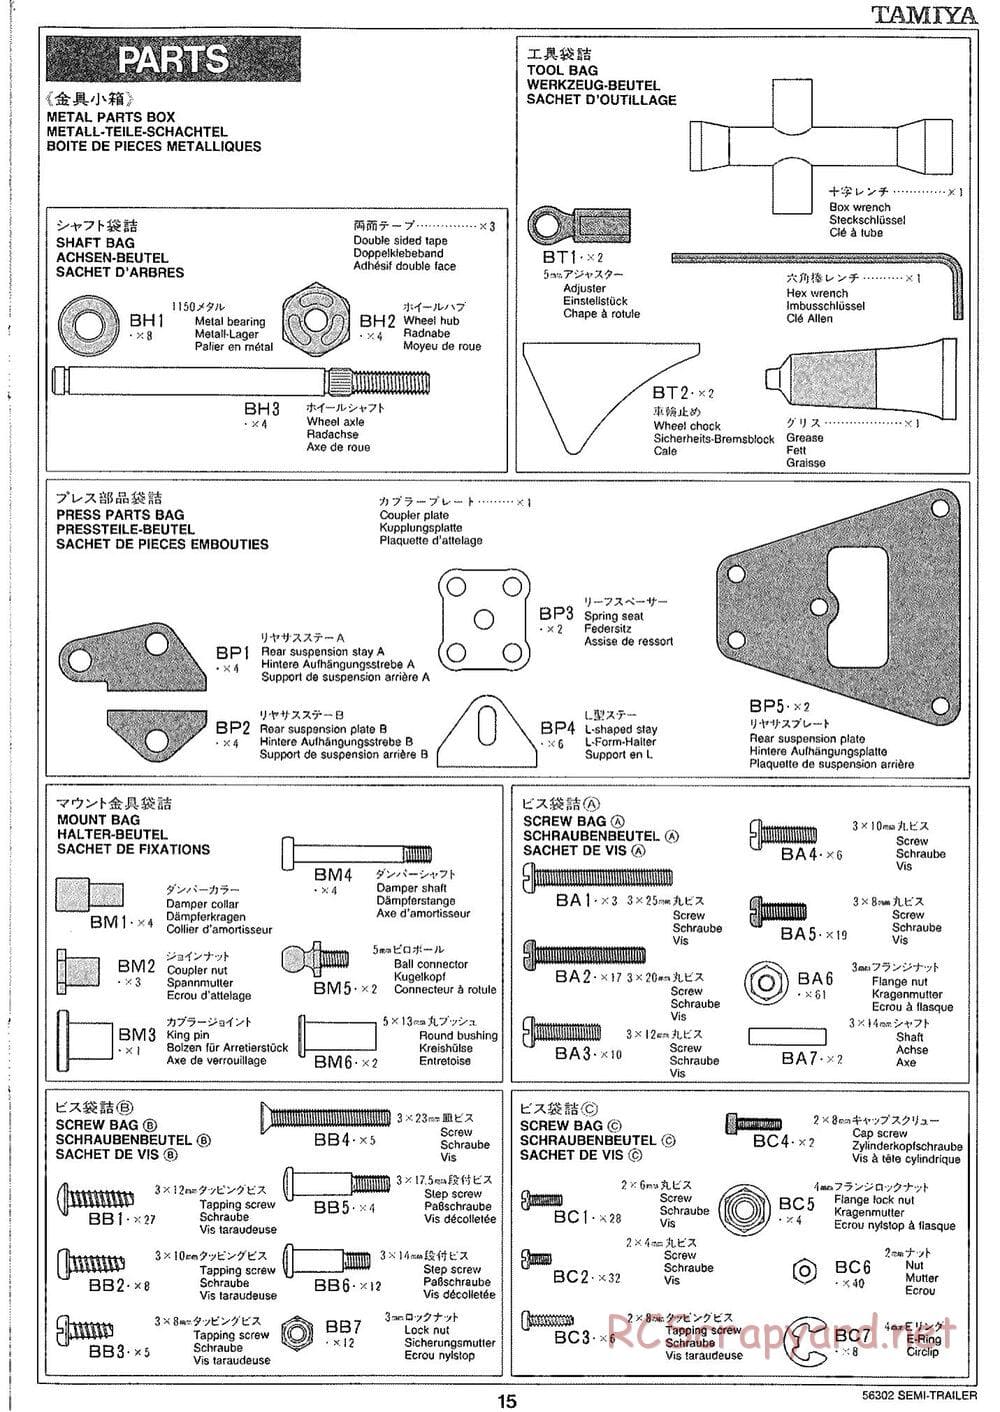 Tamiya - Semi Box Trailer Chassis - Manual - Page 15